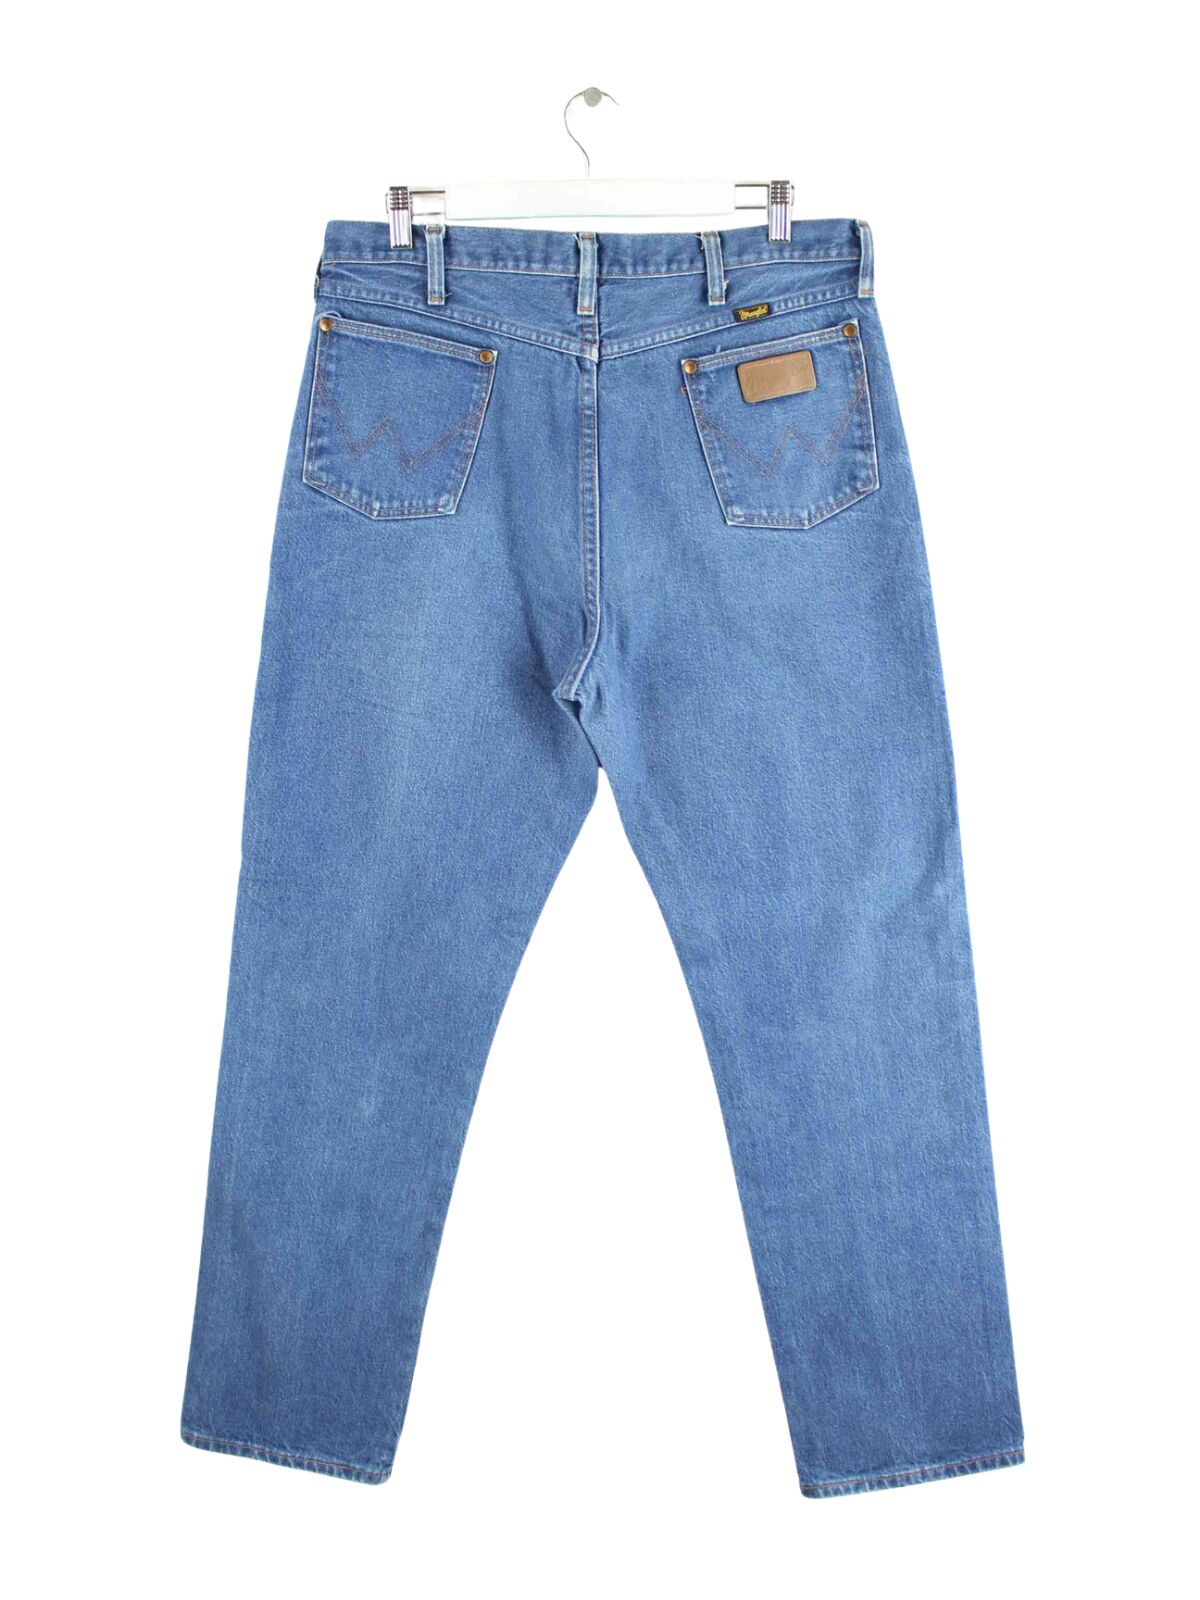 Wrangler 90s Vintage Jeans Blau W36 L32 (back image)